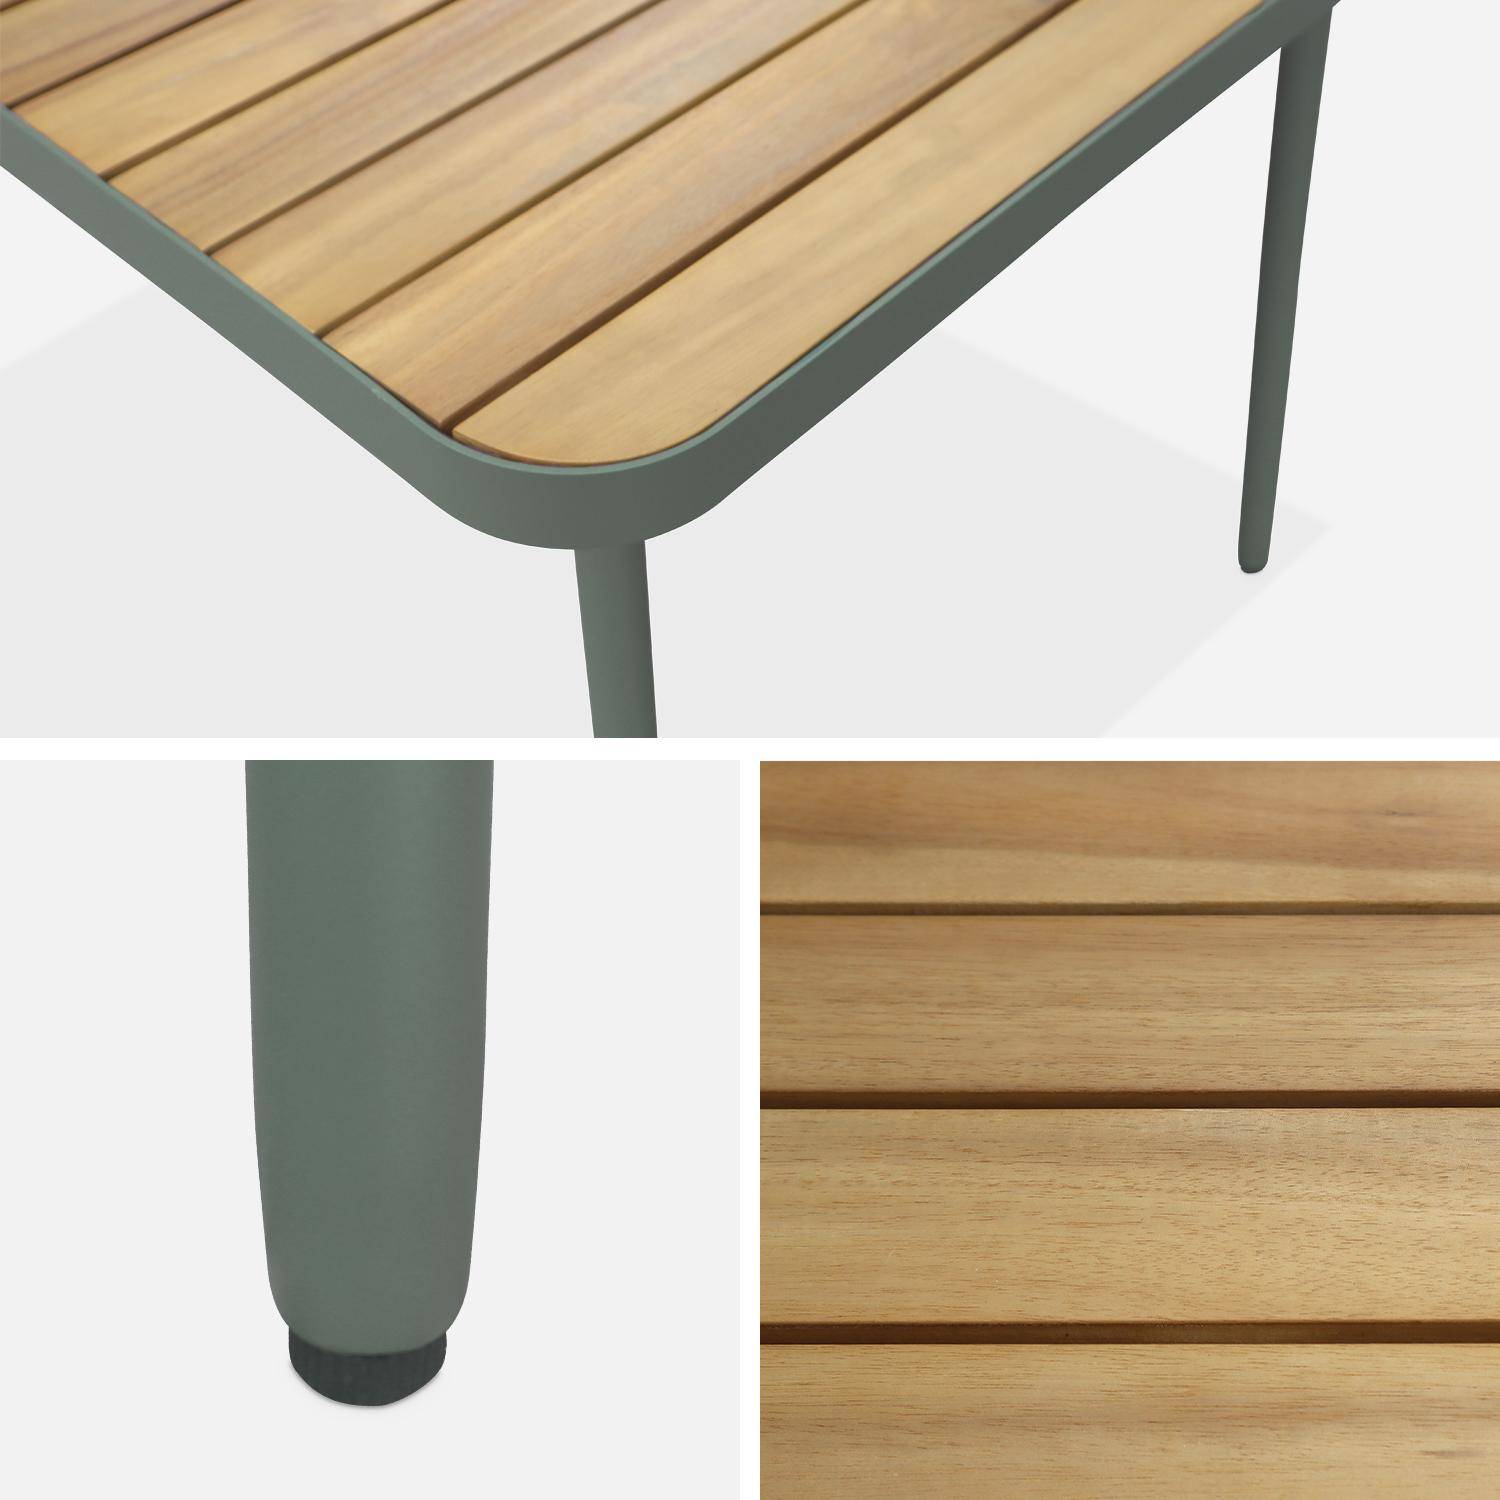 Gartentisch aus FSC-Akazienholz, salbeigrüner Stahl, klappbare Beine, 6 Plätze - Sanur,sweeek,Photo3